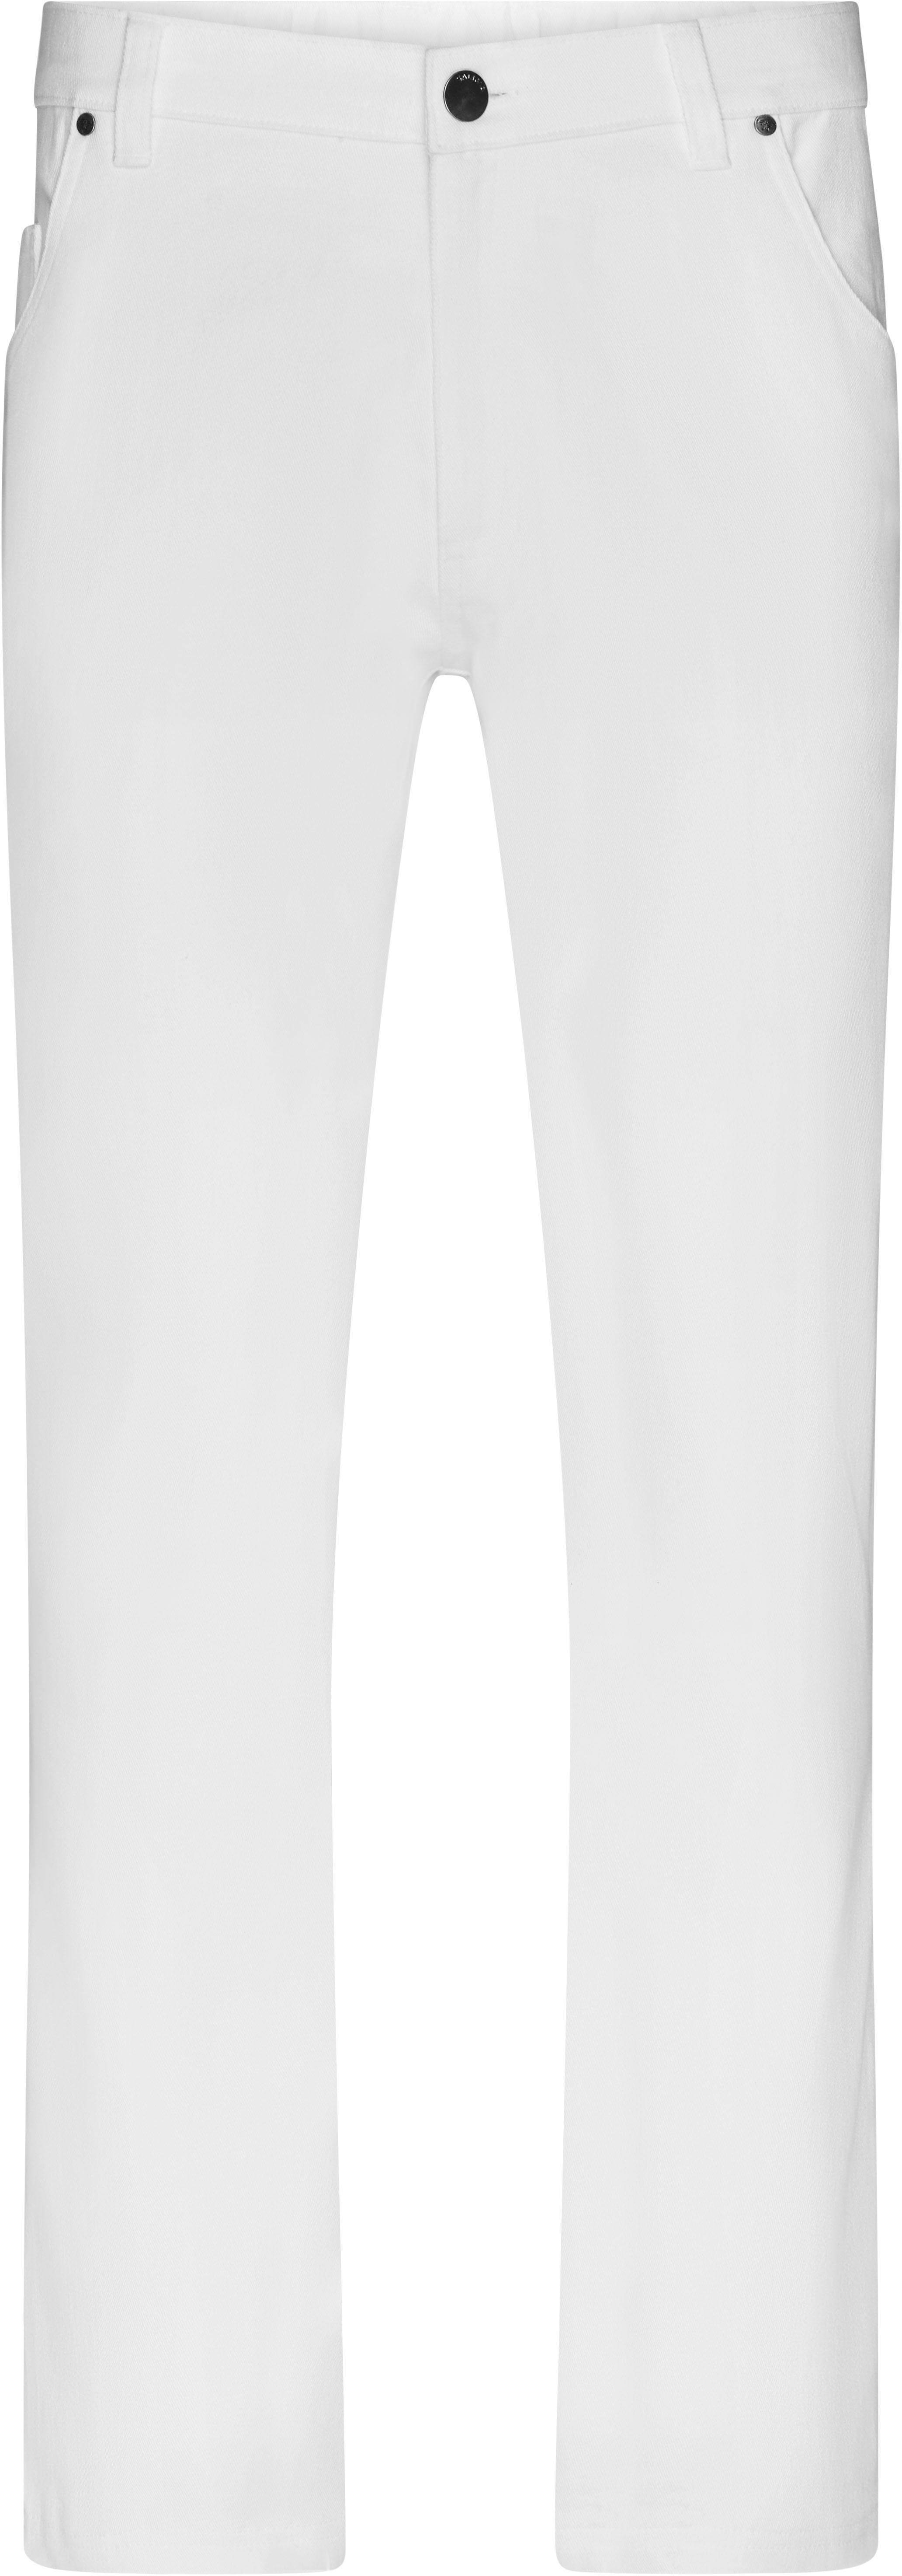 Pánské elastické kalhoty JN 3002 Barva: bílá, Velikost: 52